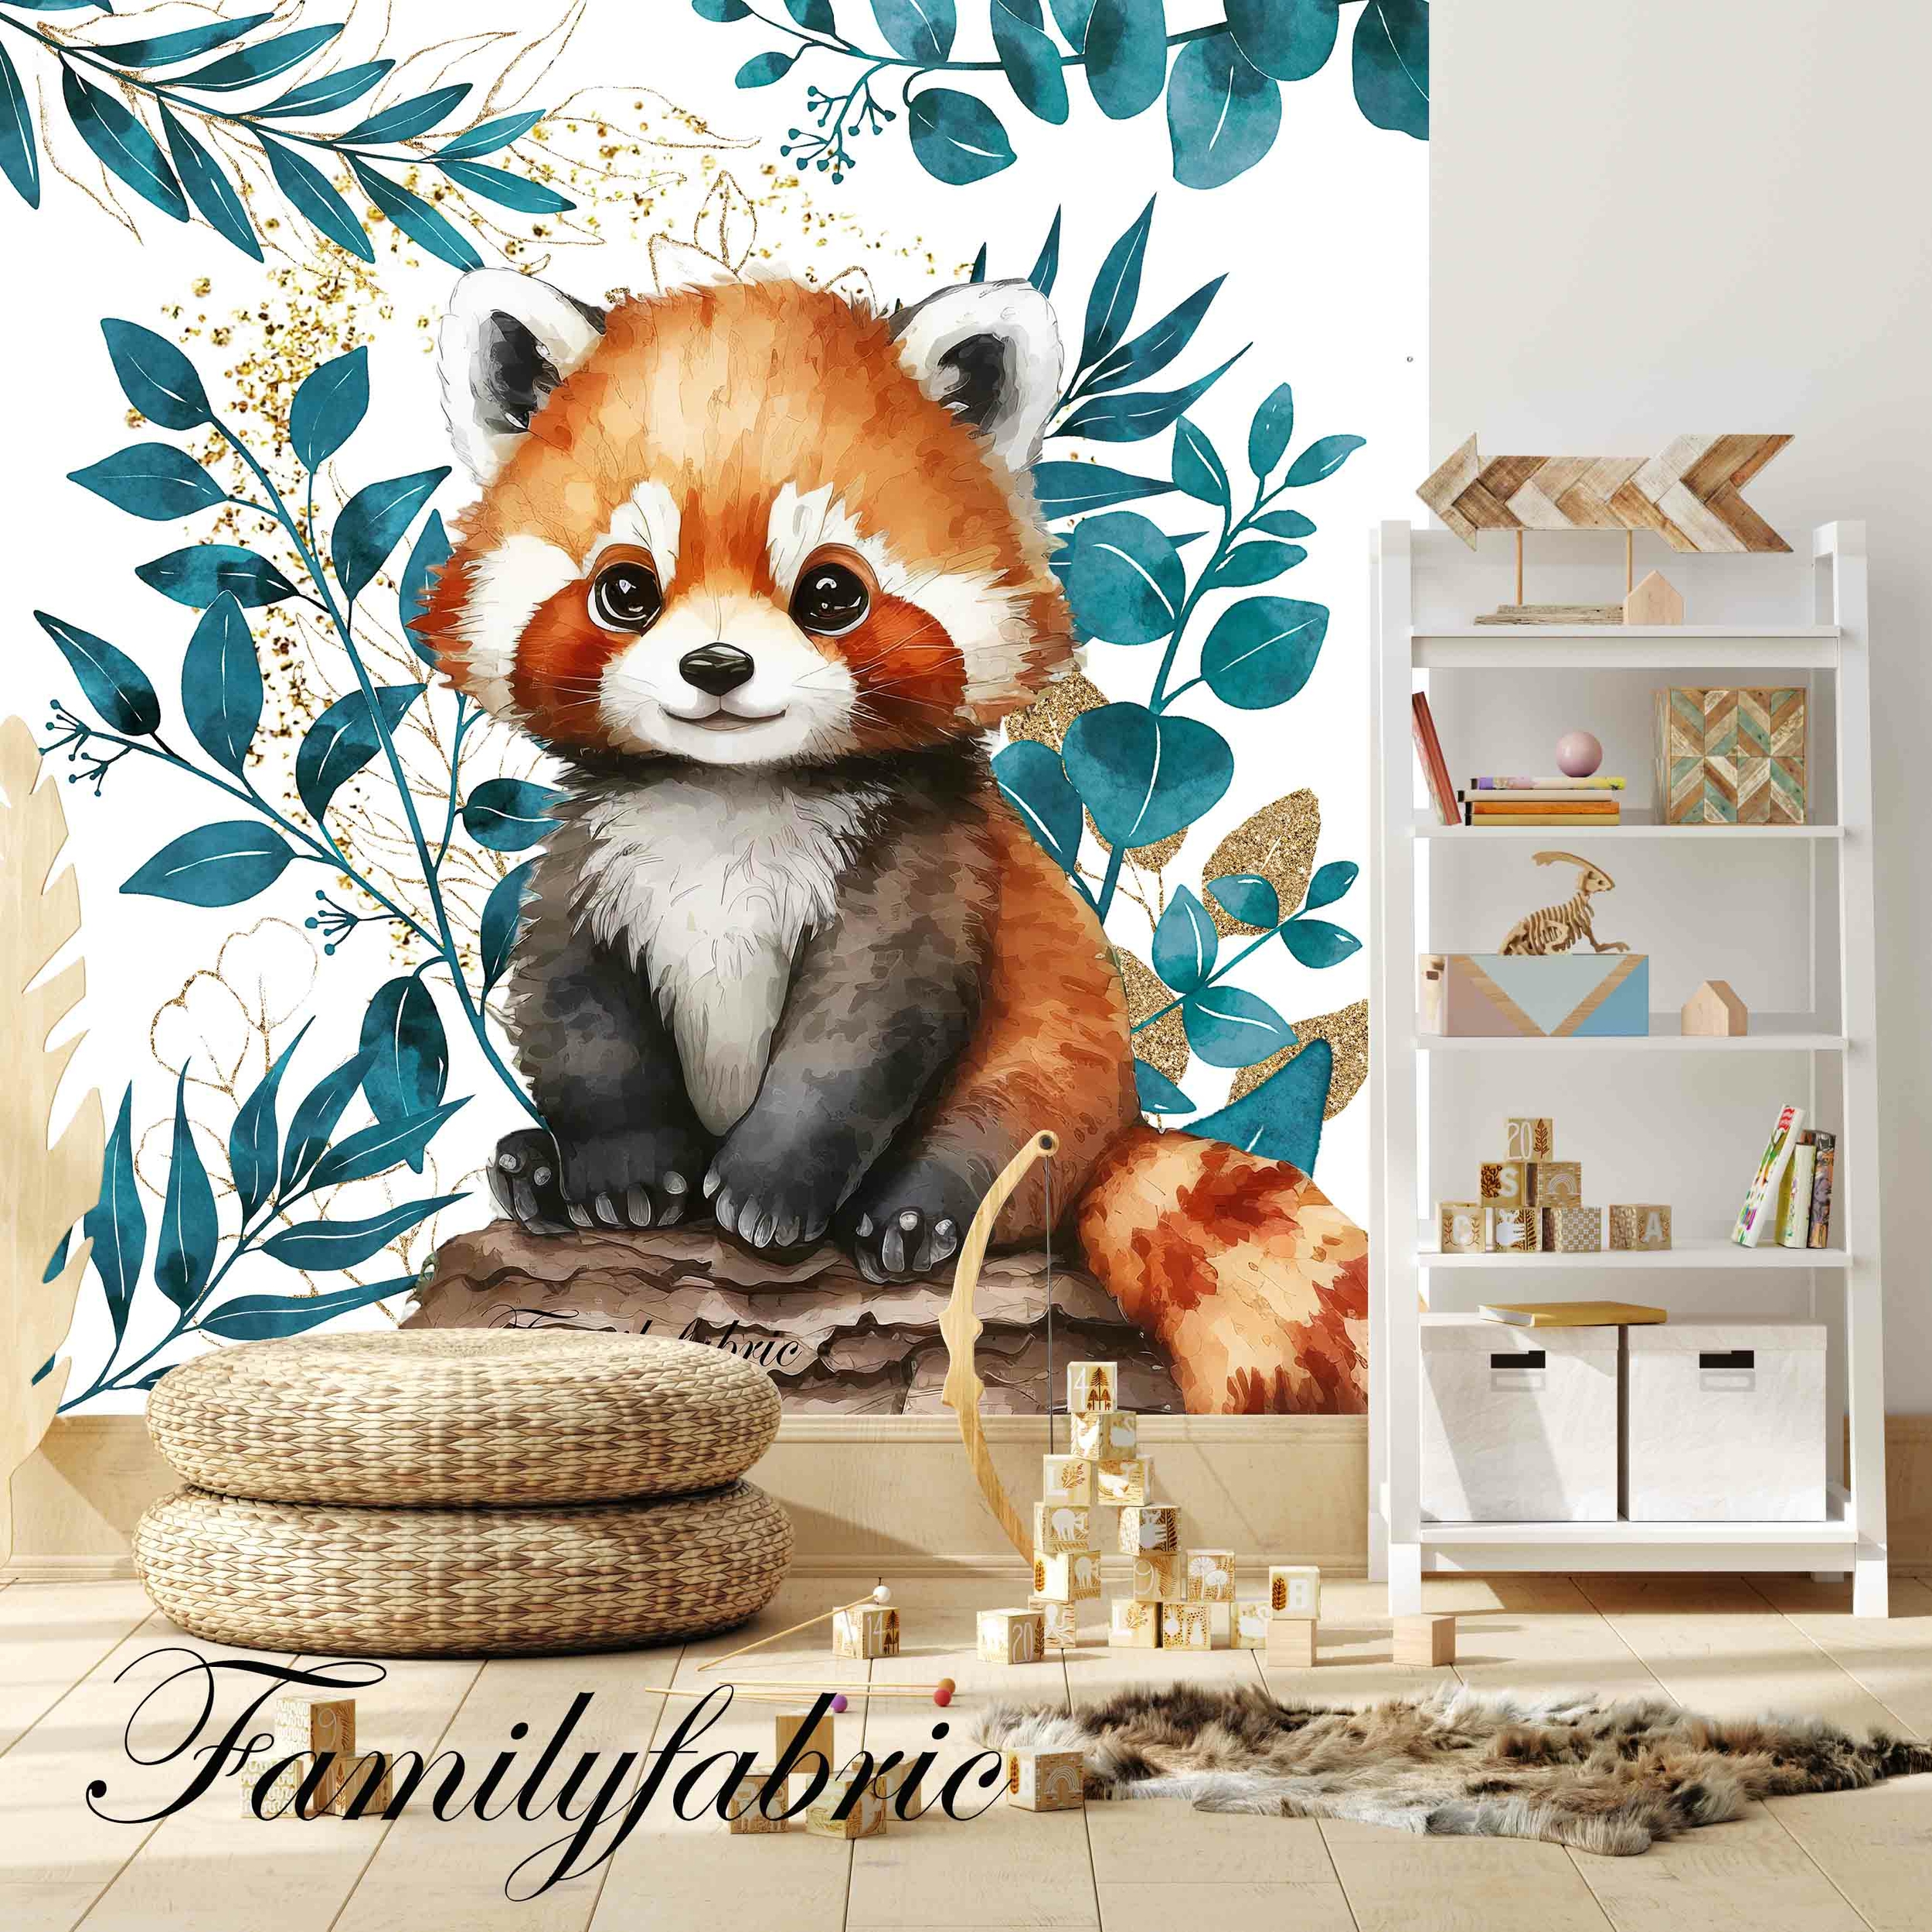 Couverture Carrée Feuillage Bleu Canard Or Panda Roux -  Couvertures/Couvertures Familyfabric Carrées - FamilyFabric